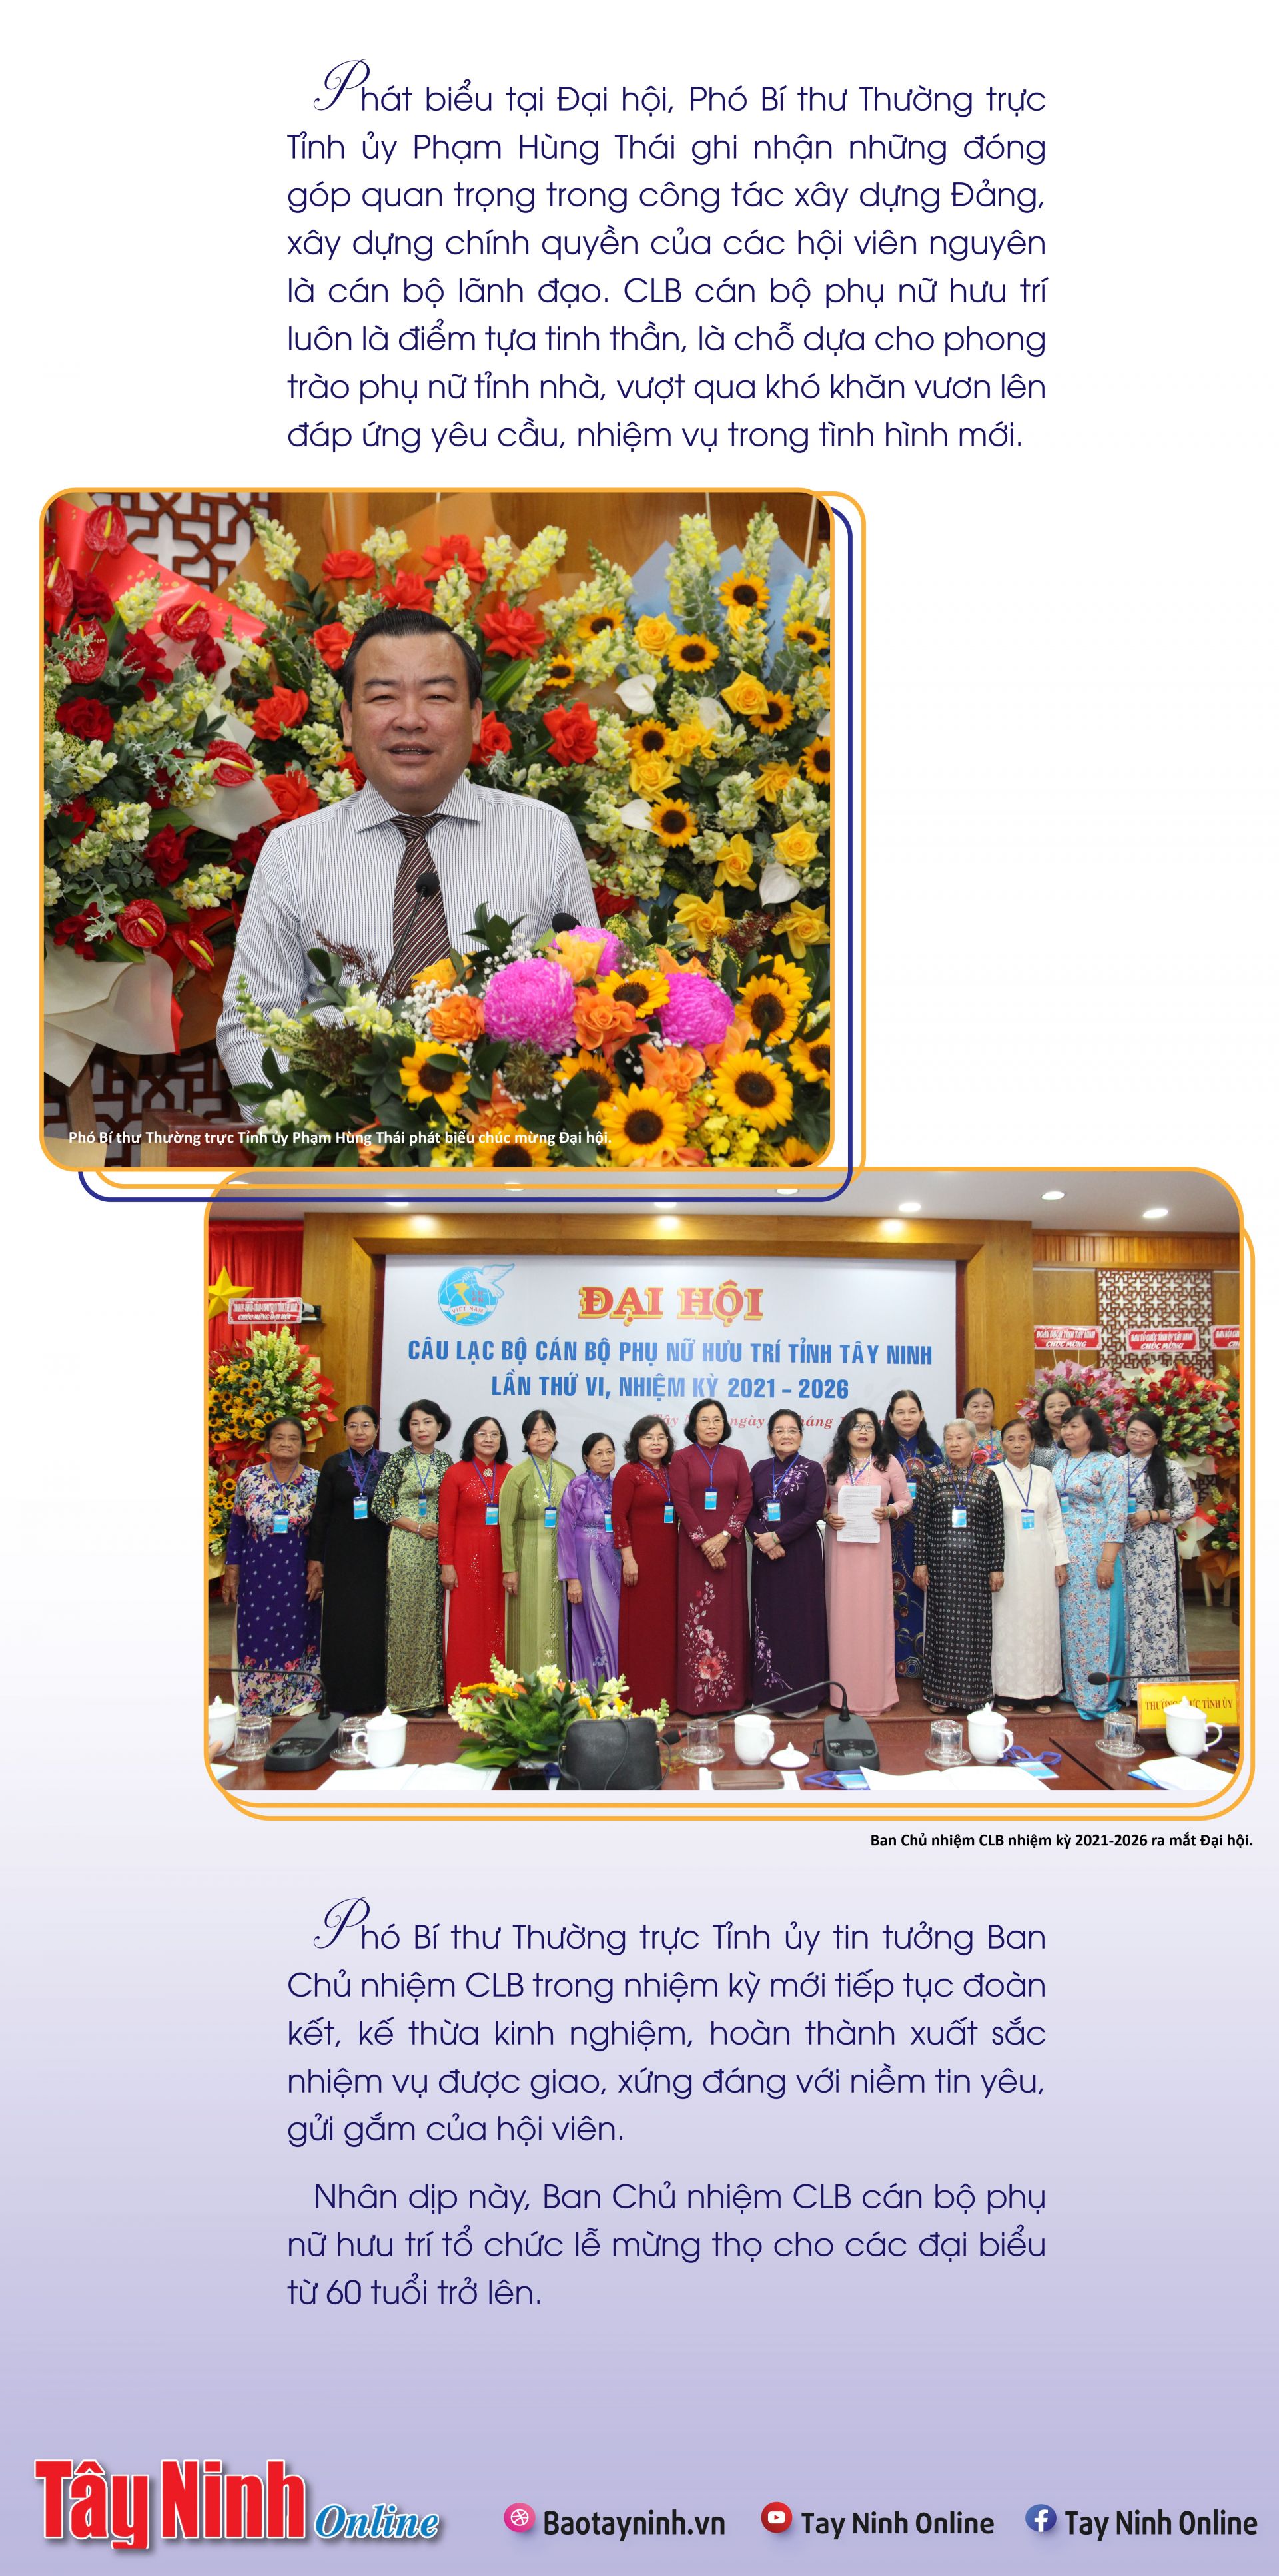 Bà Trần Thị Ngọc Thu đắc cử Chủ nhiệm CLB cán bộ phụ nữ hưu trí